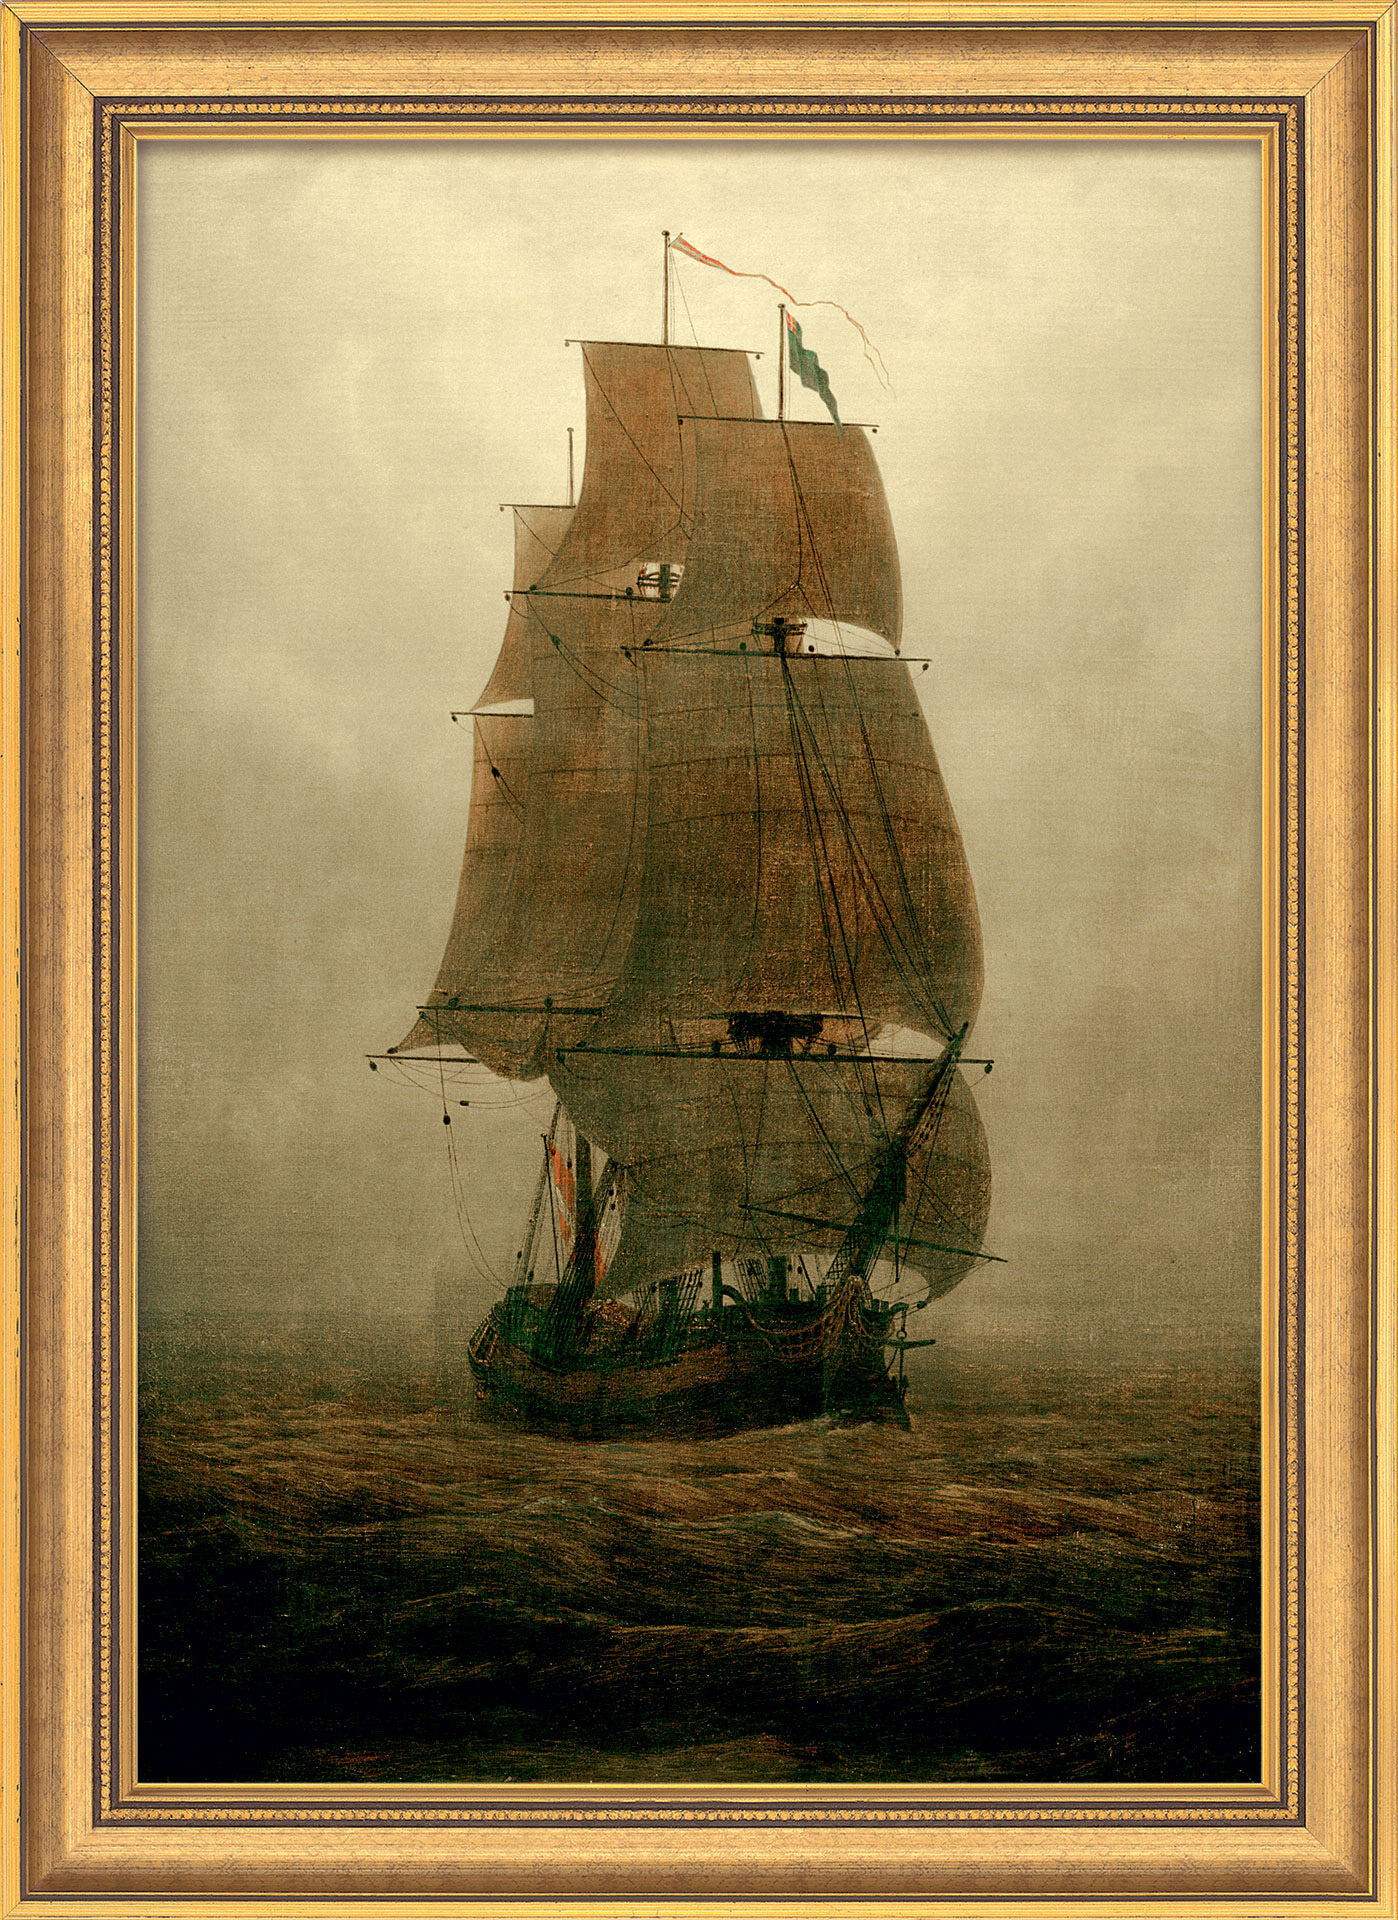 Billede "Sejlskib i tåge" (1815), indrammet von Caspar David Friedrich